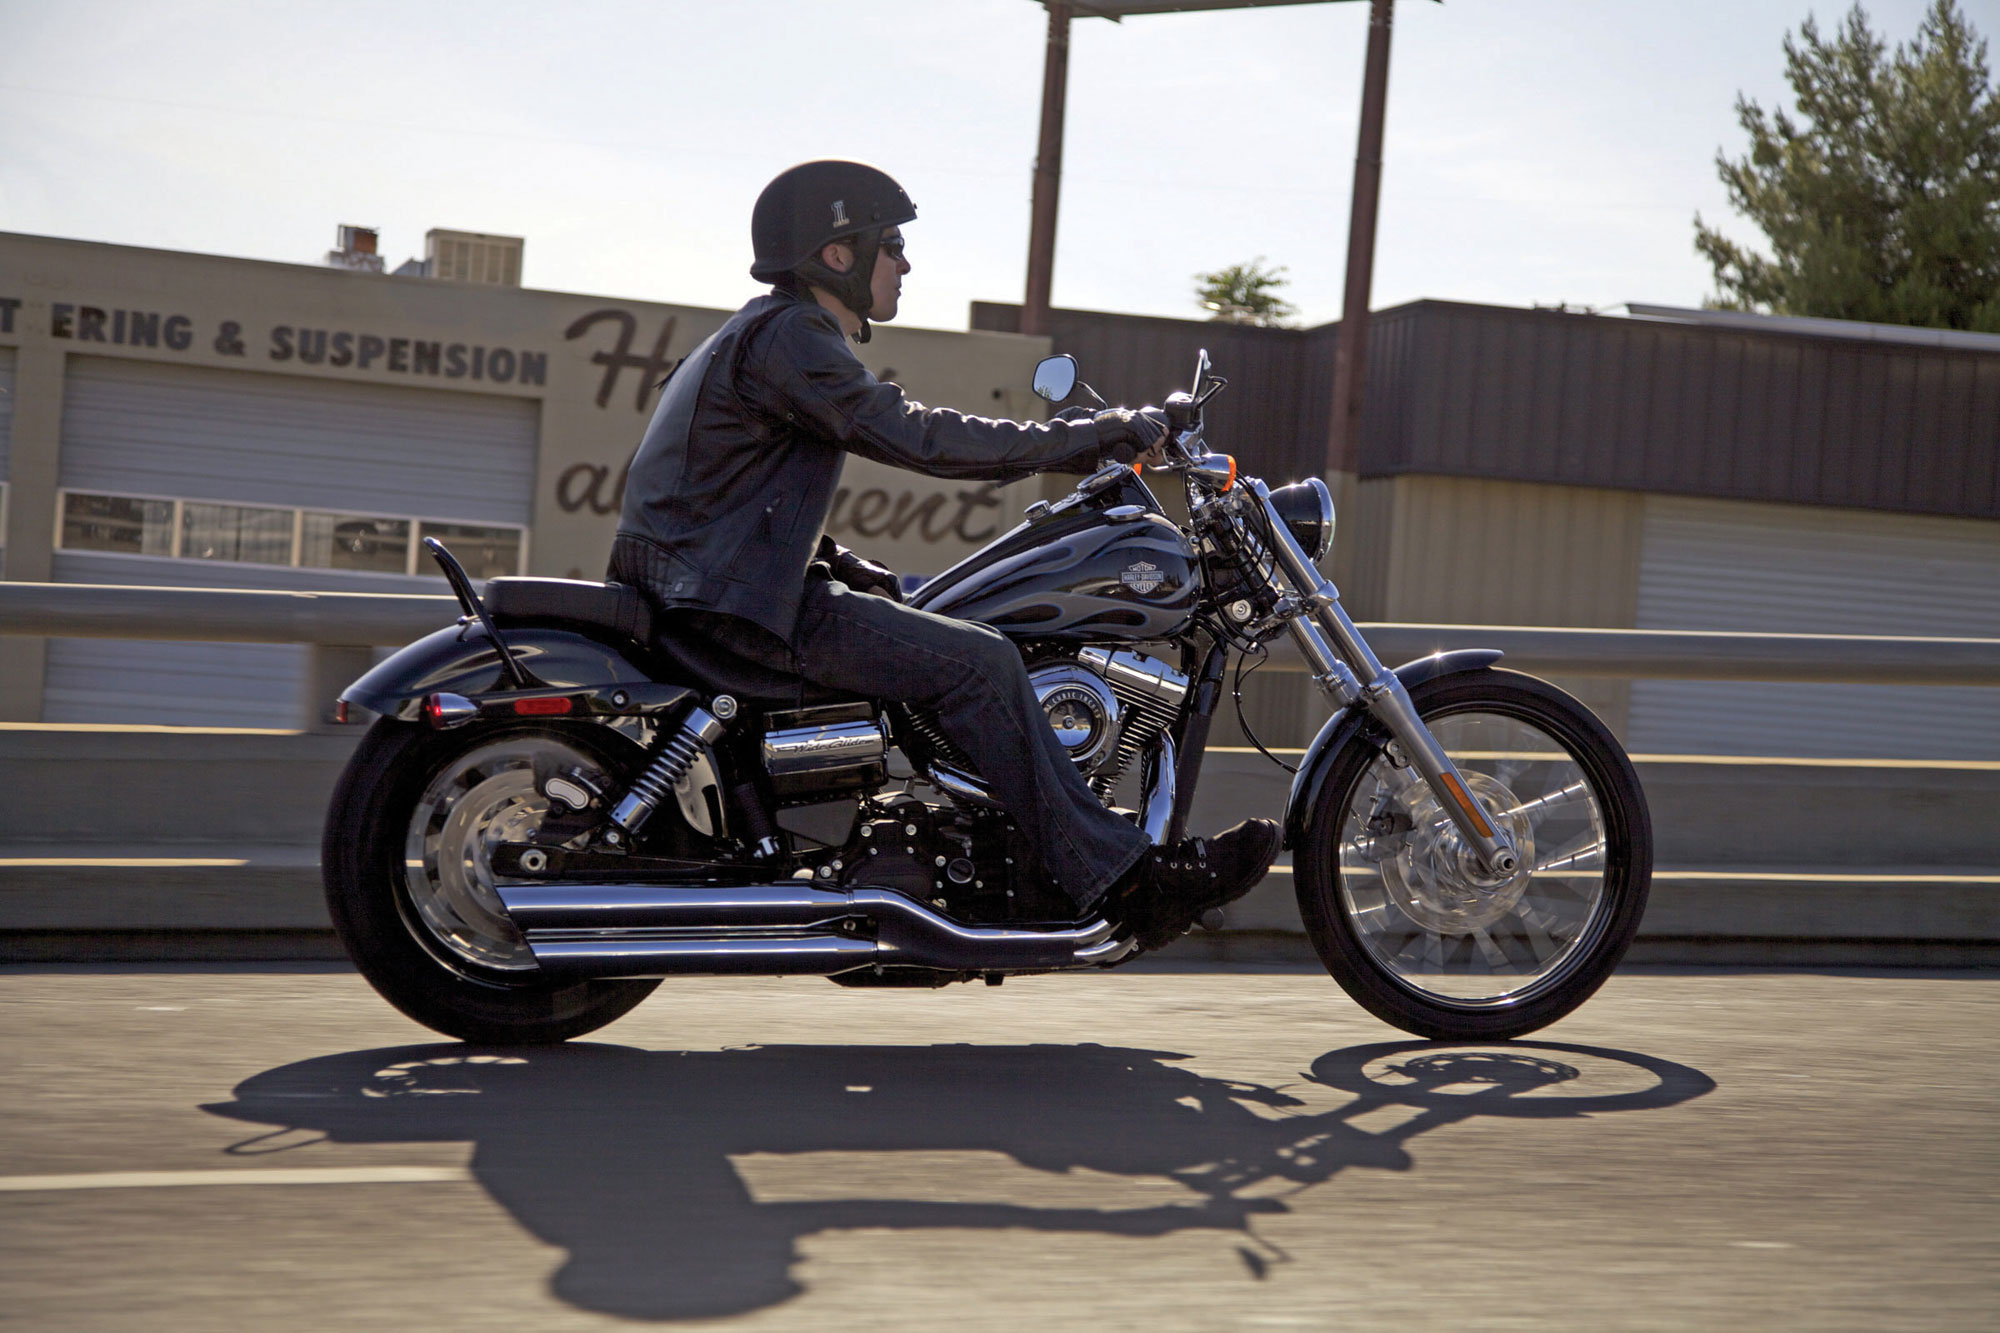 2013 Harley Dyna Super Glide Off 74 Medpharmres Com